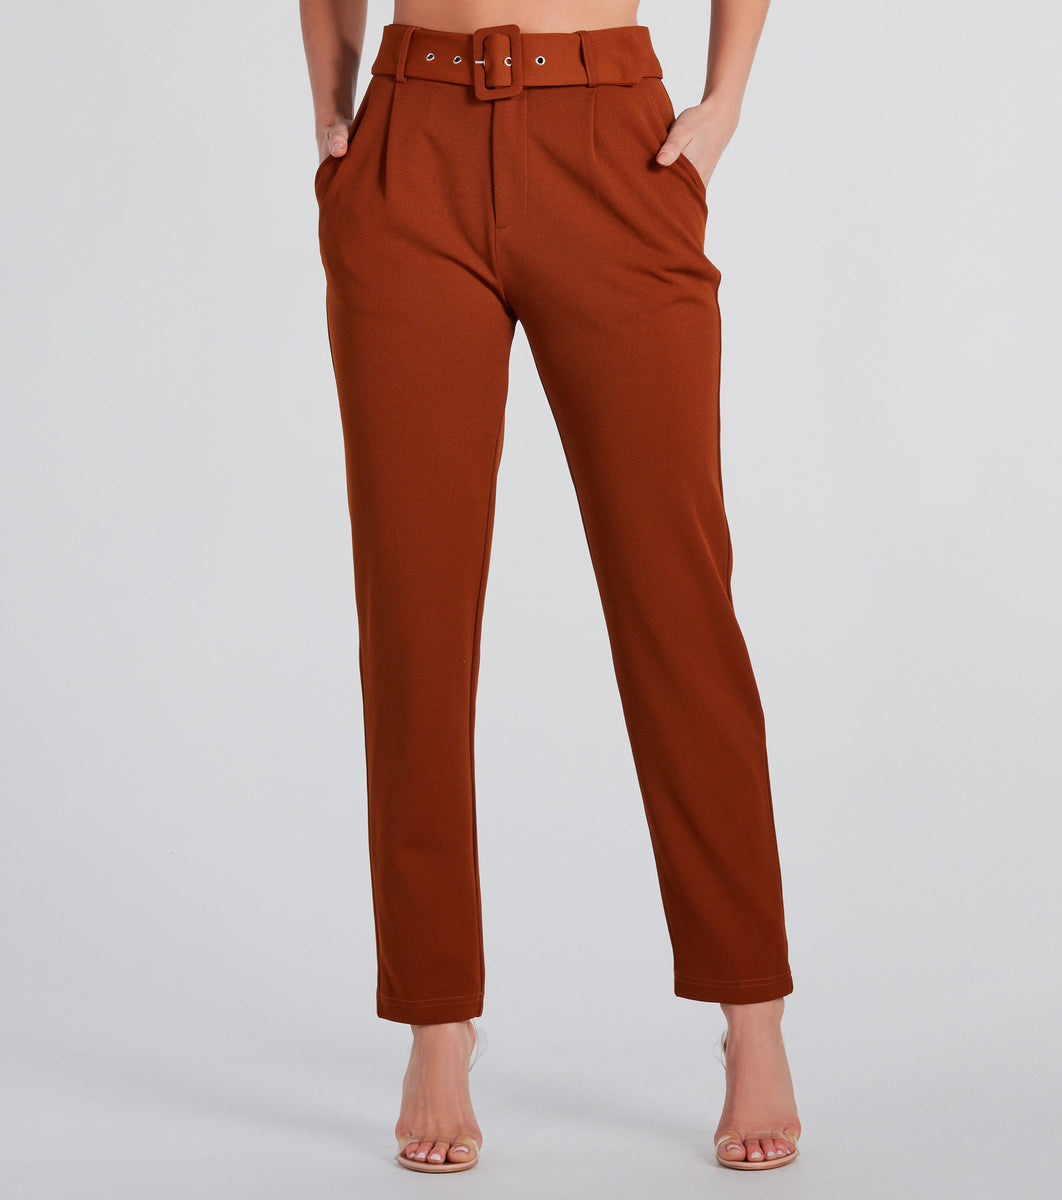 Le Suit Plus Size Stretch Crepe One-Button Pantsuit